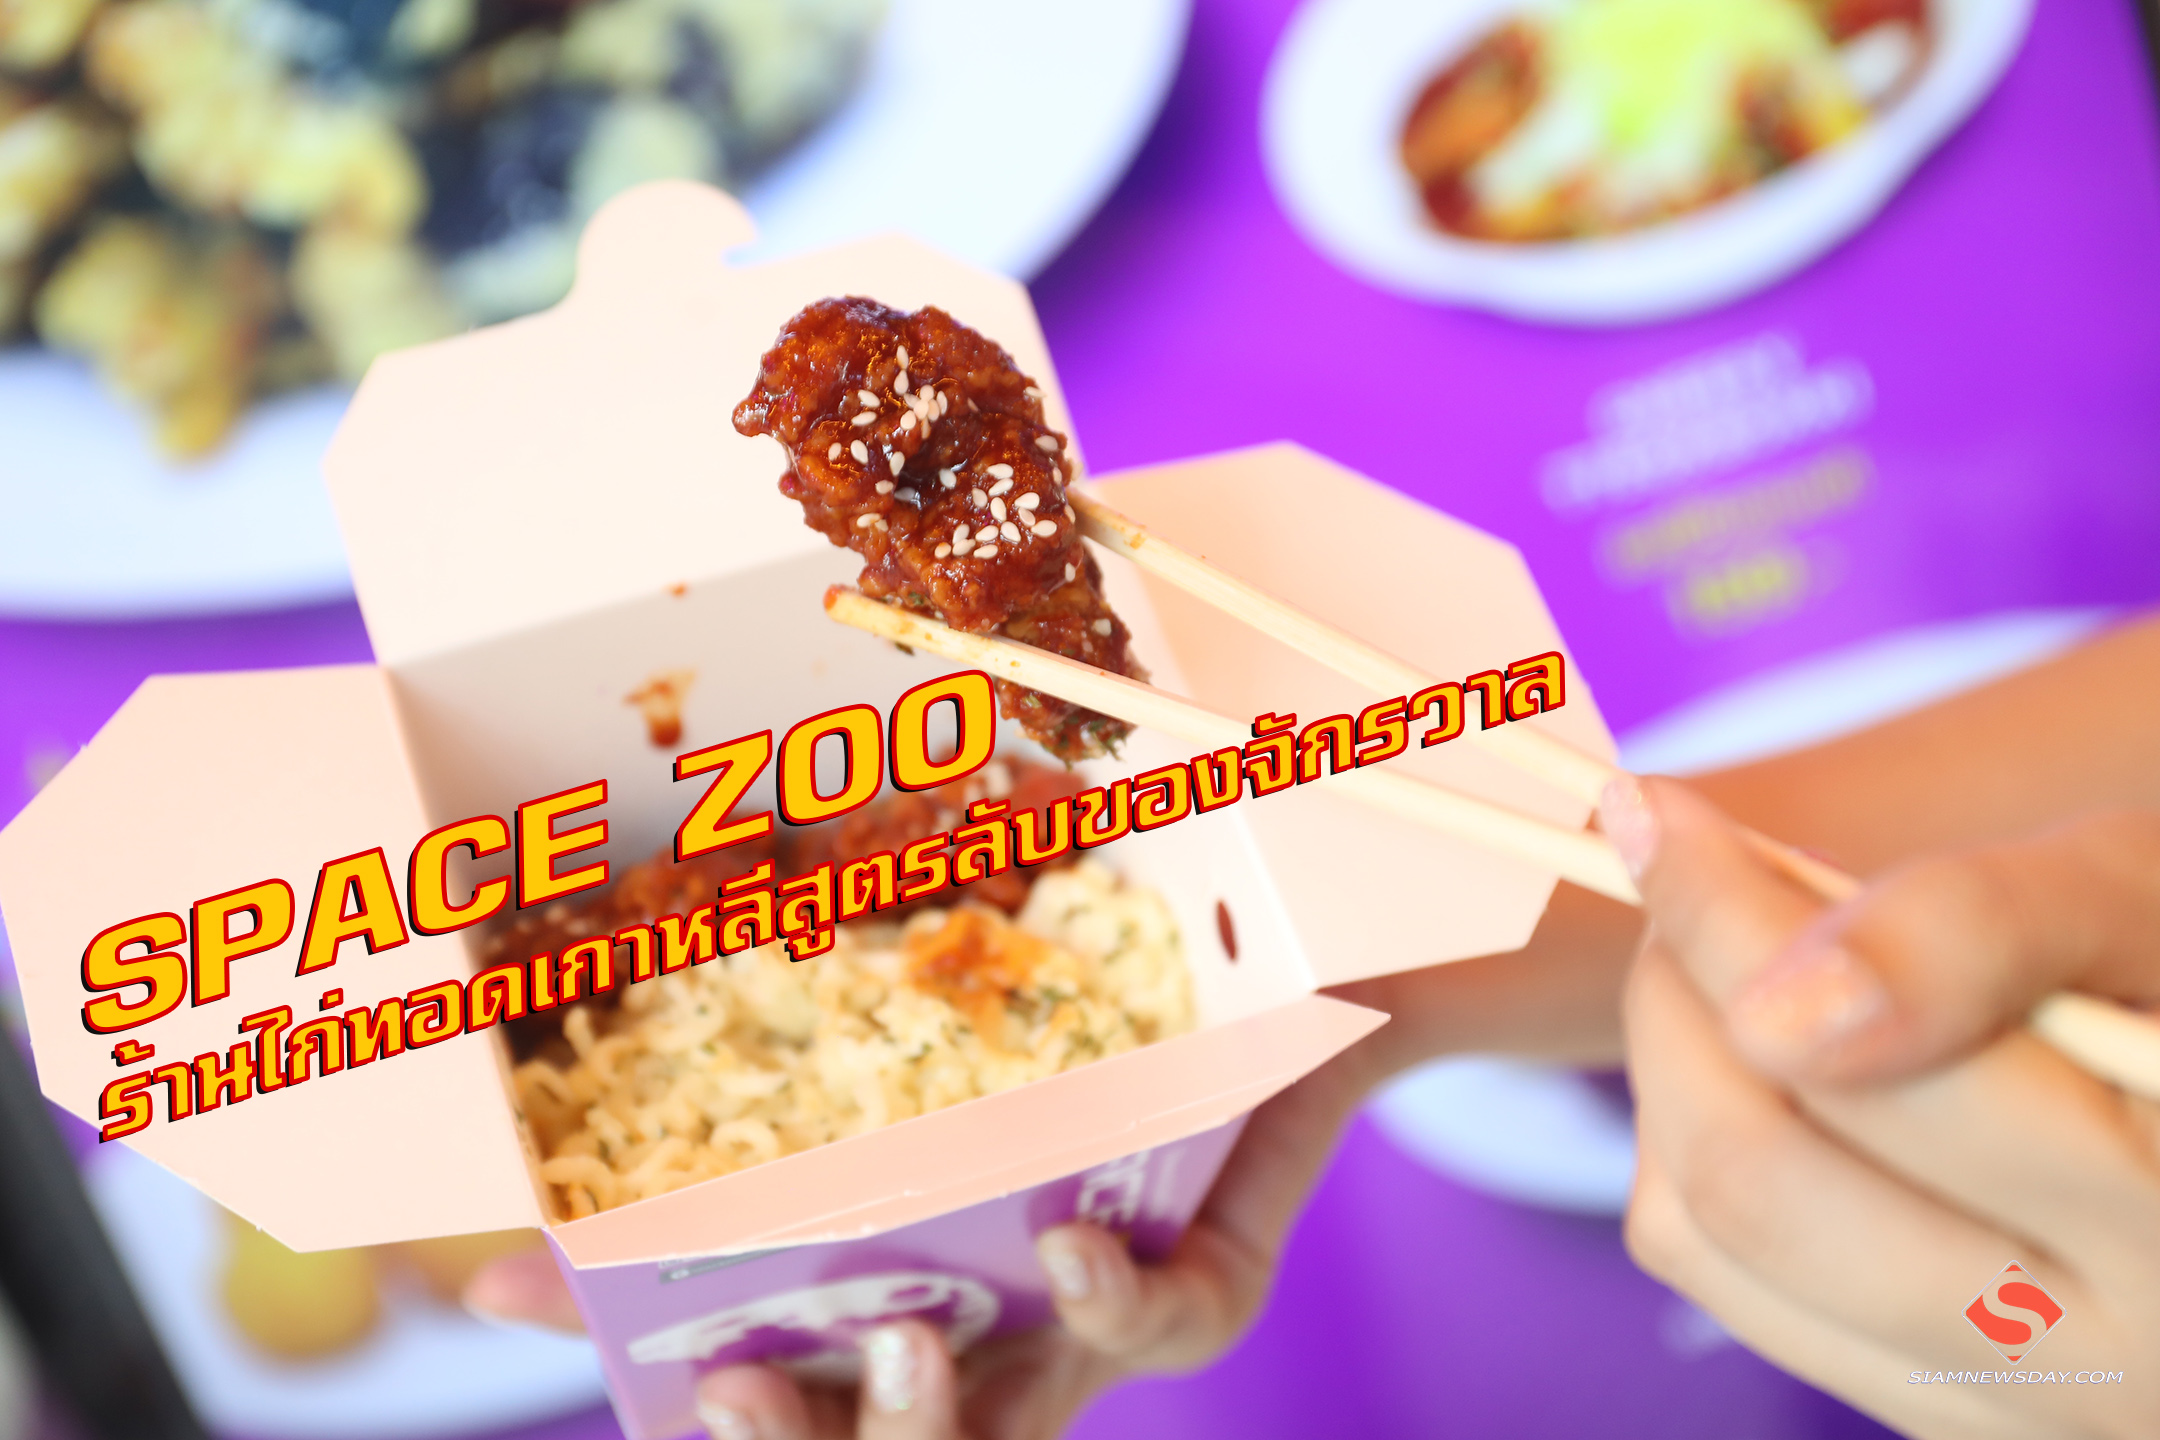 “SPACE ZOO”   ร้านไก่ทอดเกาหลีสูตรลับของจักรวาล